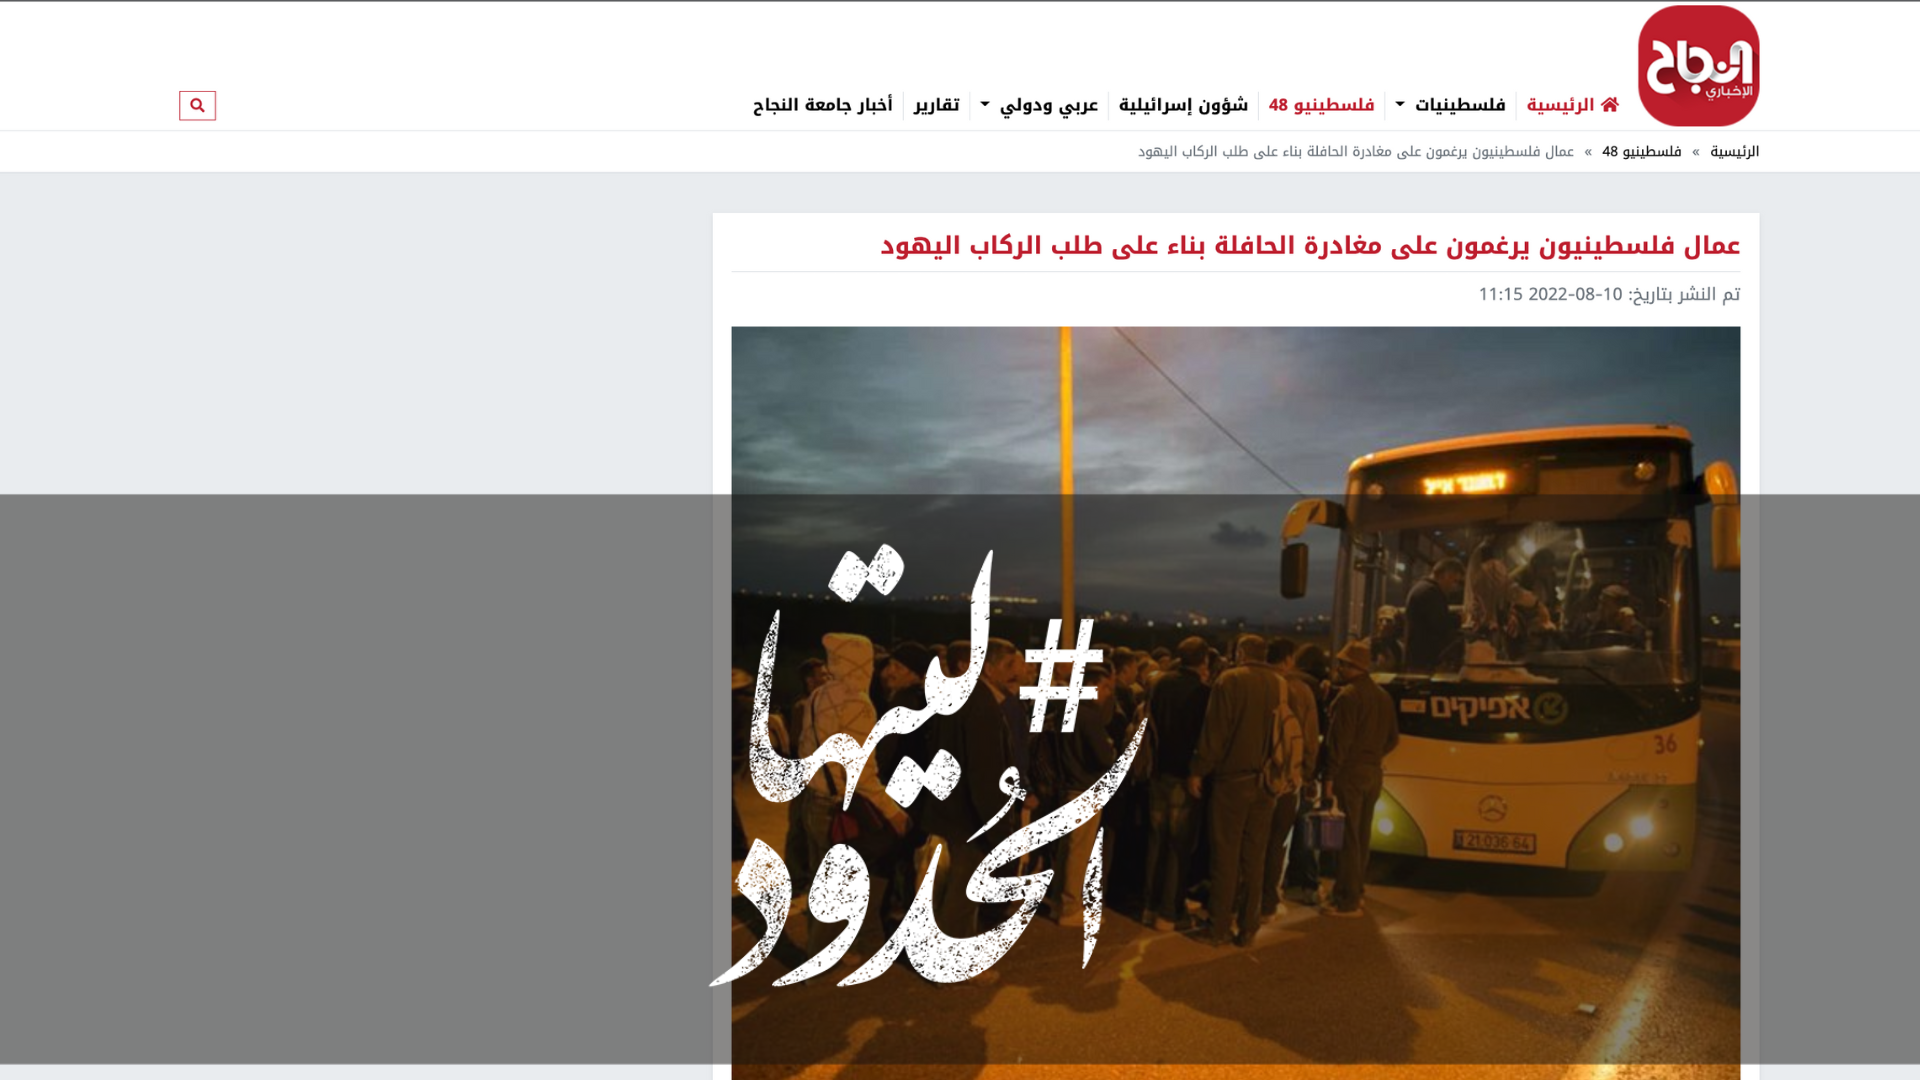 صورة عمال فلسطينيون يرغمون على مغادرة الحافلة بناء على طلب الركاب اليهود